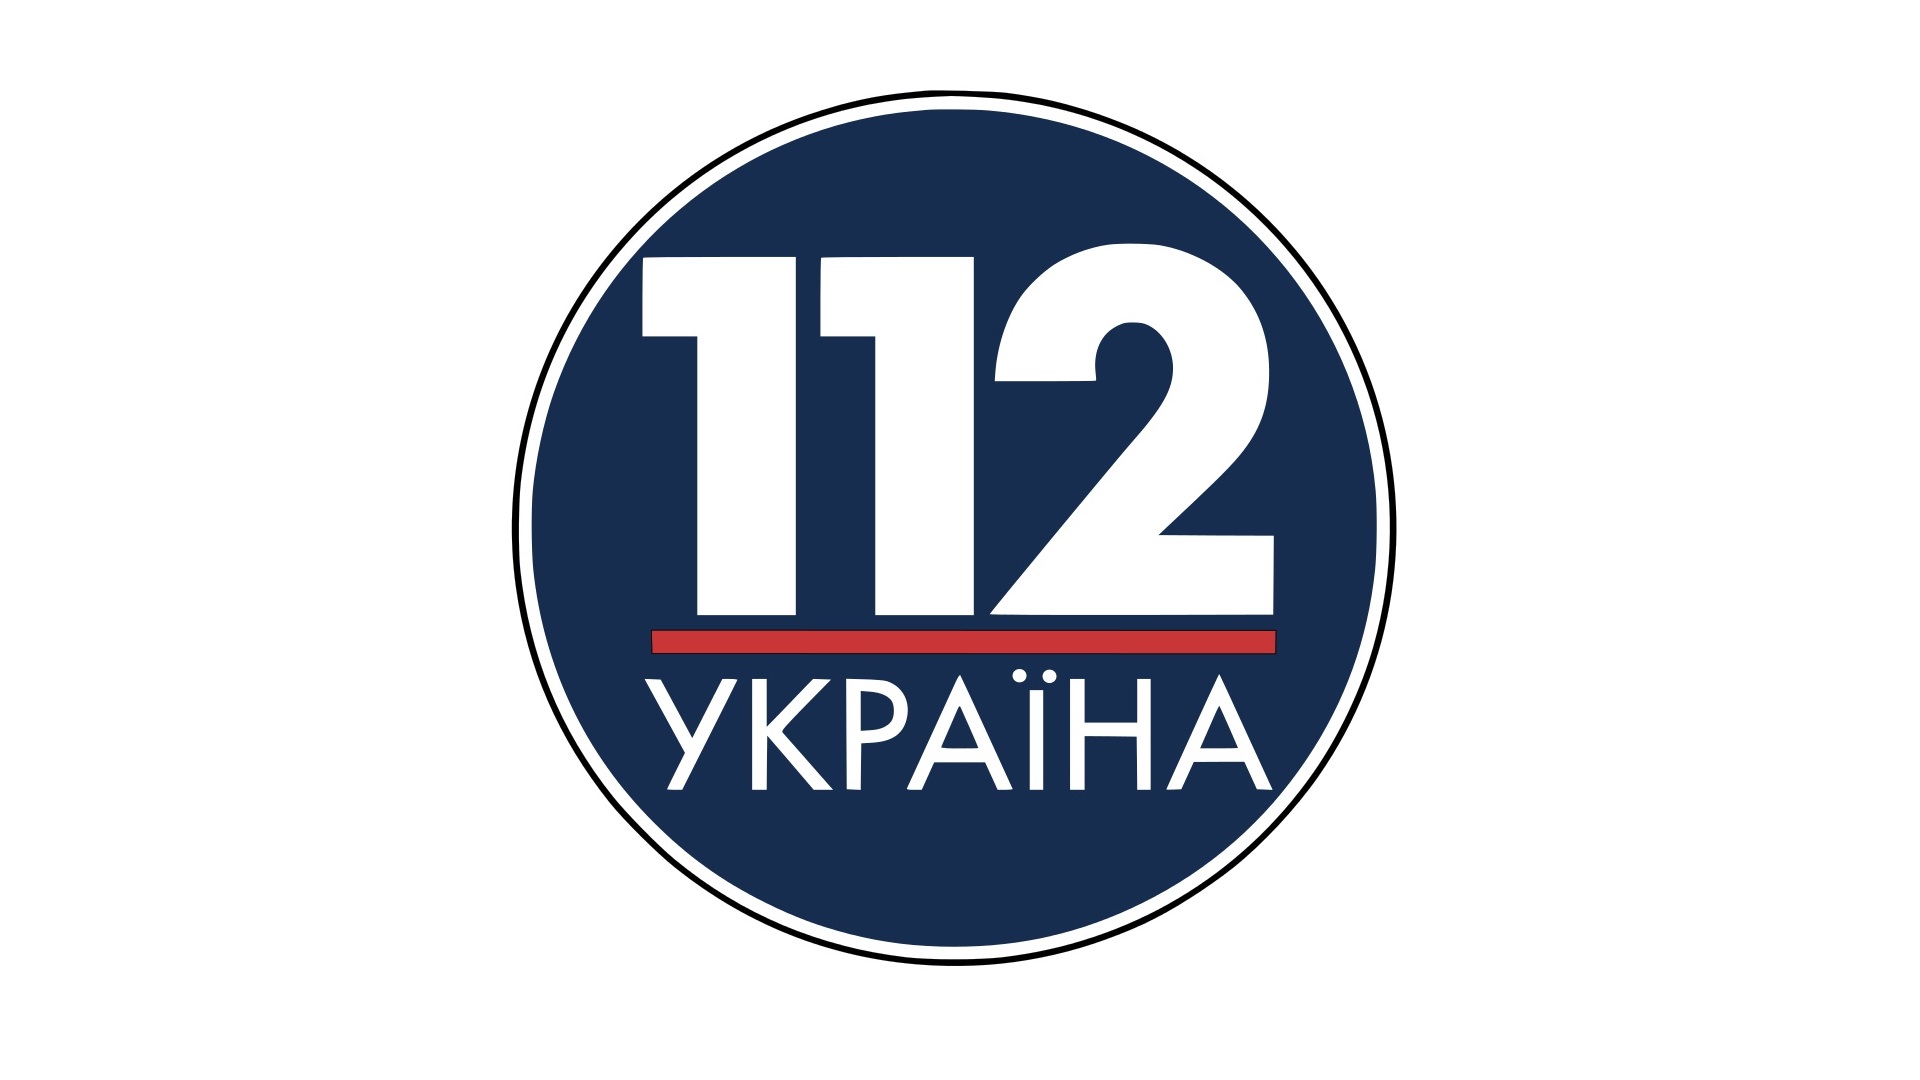 Нацрада відмовила групі компаній «112 Україна» в продовженні цифрових ліцензій